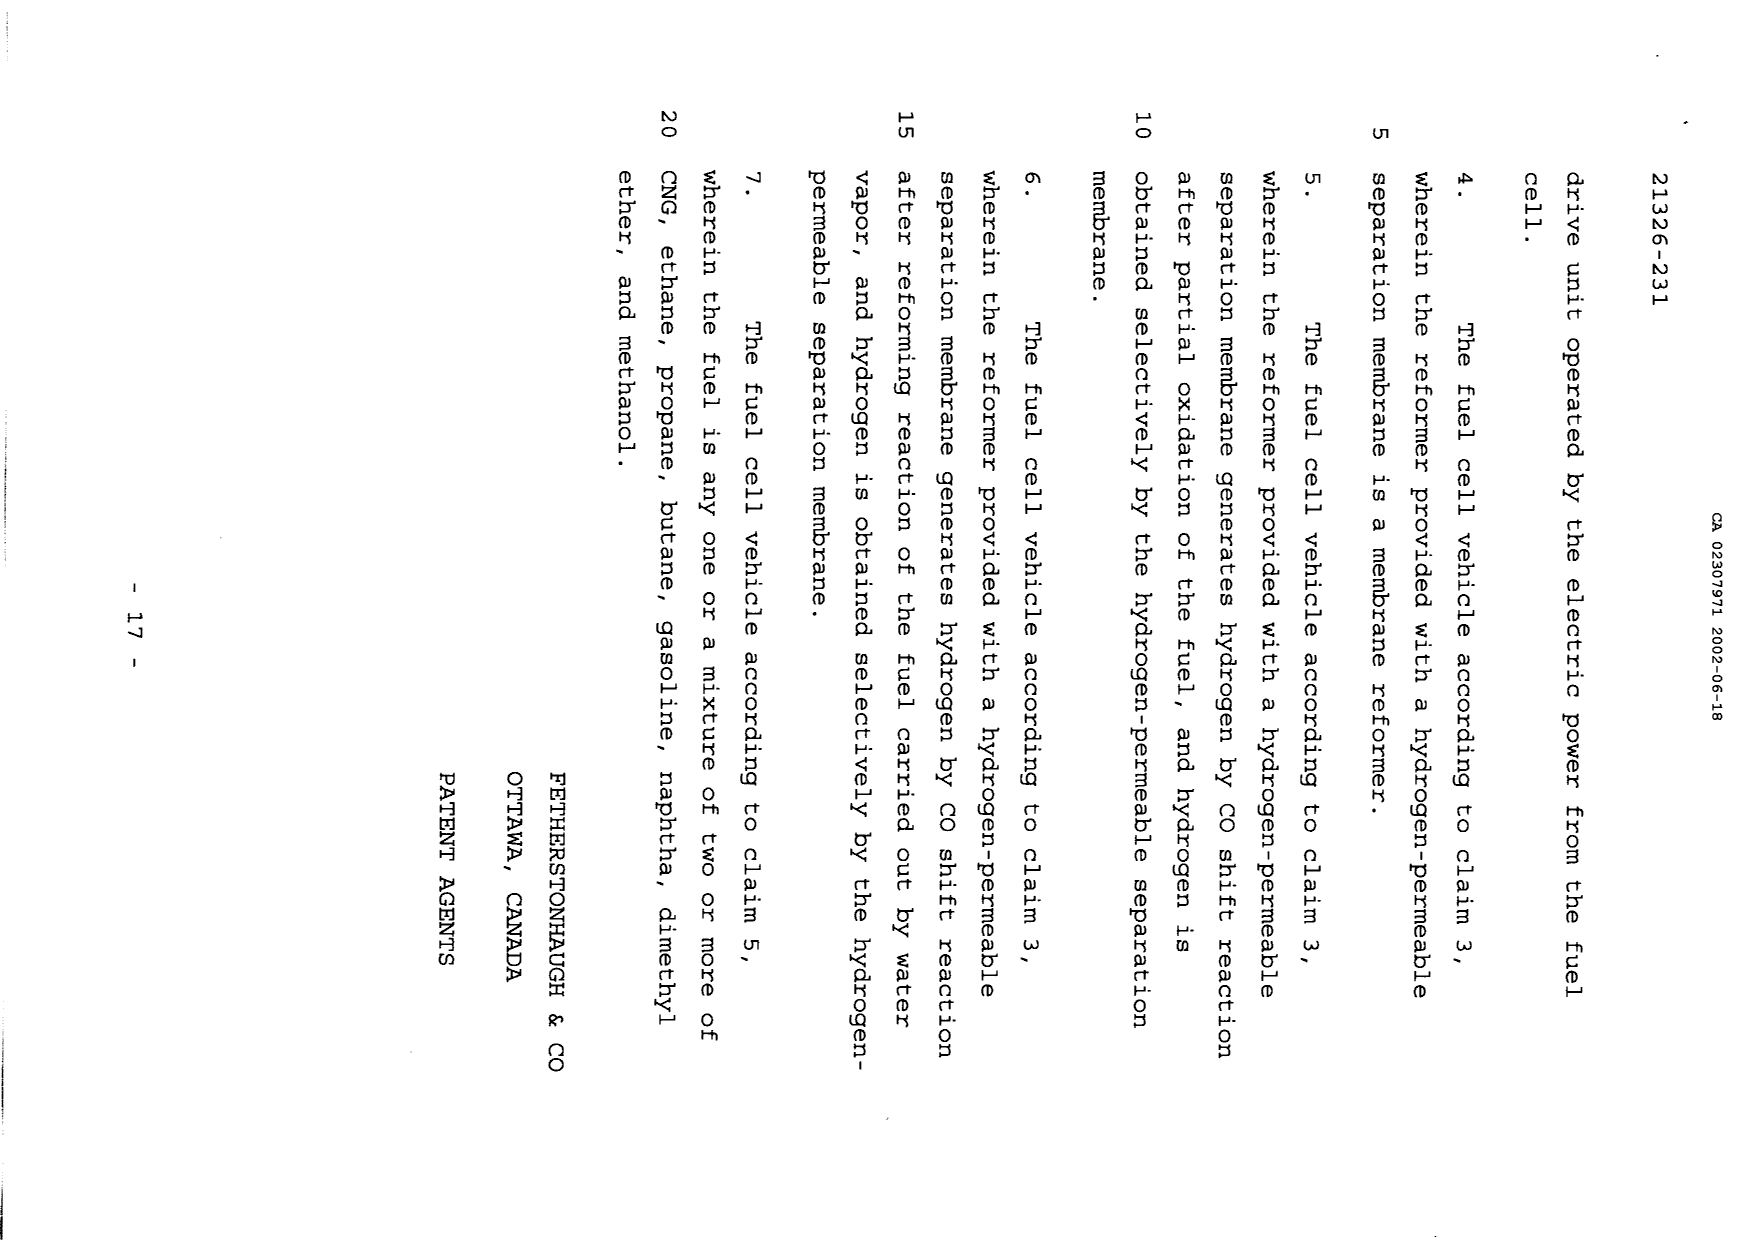 Document de brevet canadien 2307971. Revendications 20011218. Image 2 de 2